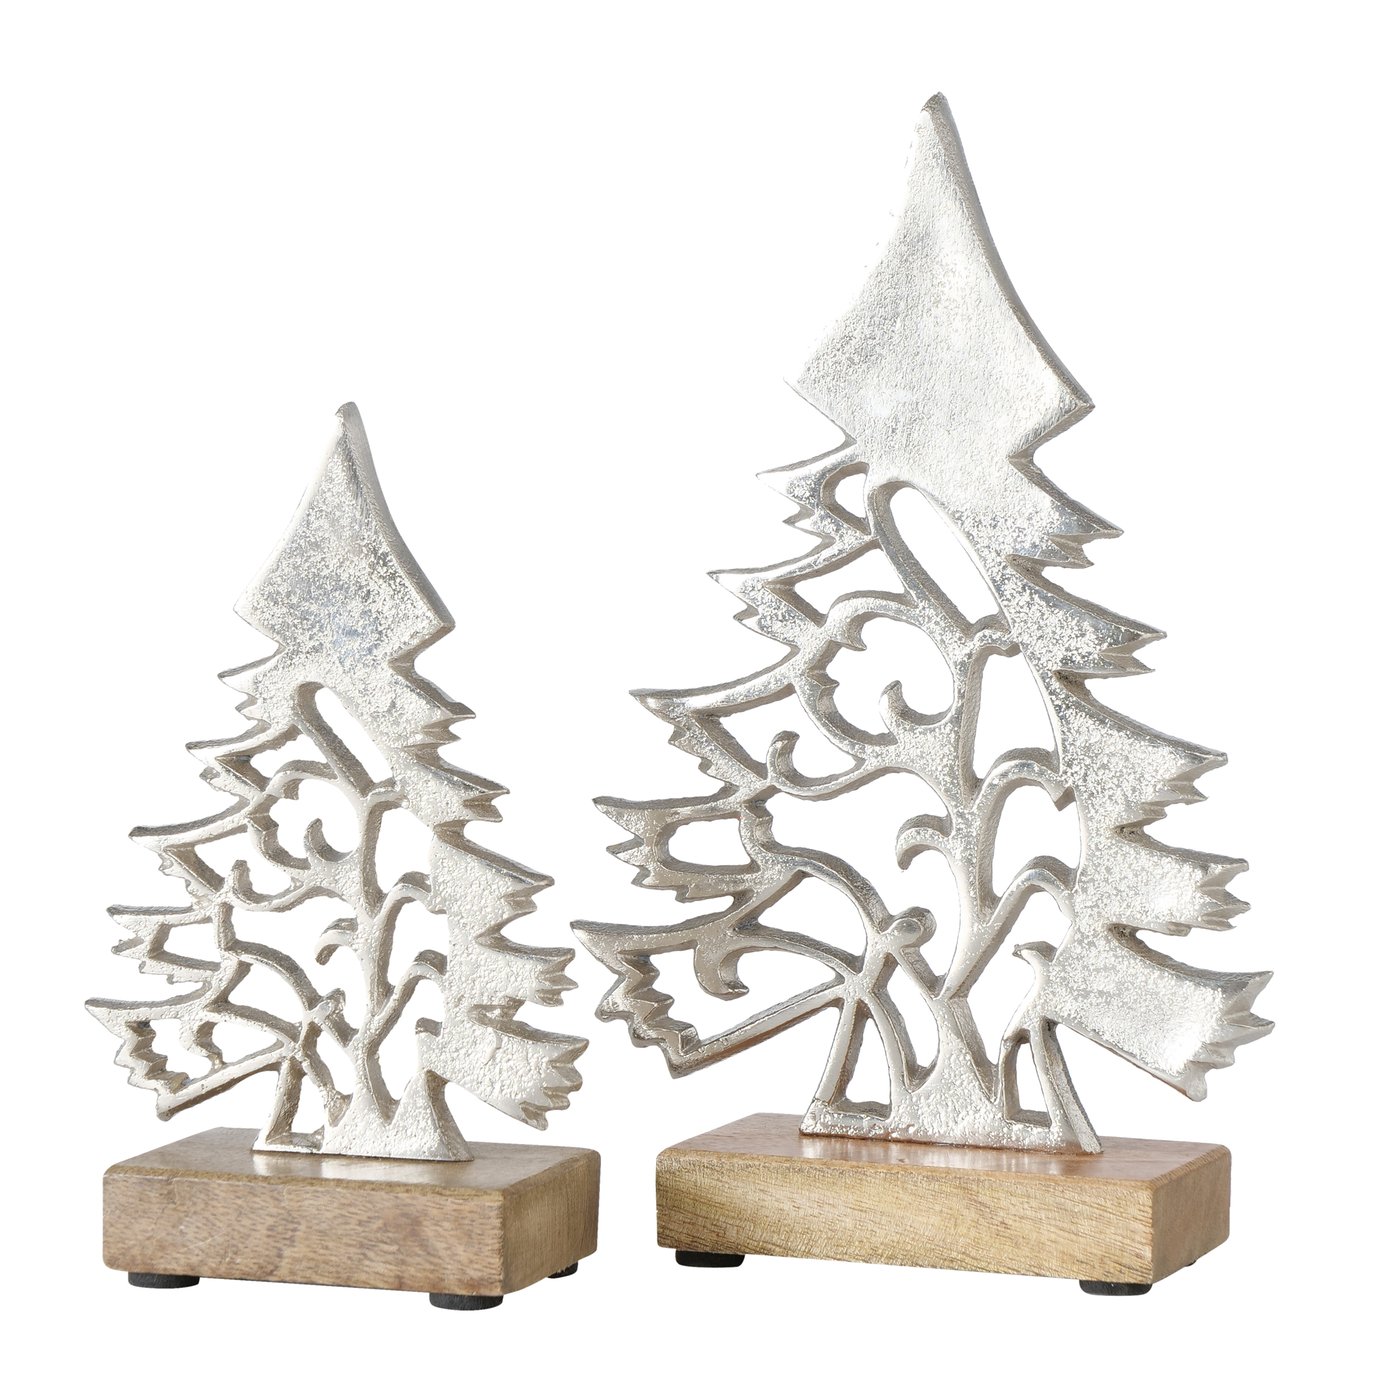 Deko Aufsteller Weihnachtsbaum braun silber 2er Set - H20-27cm, 2013598, 4020607911802, Boltze